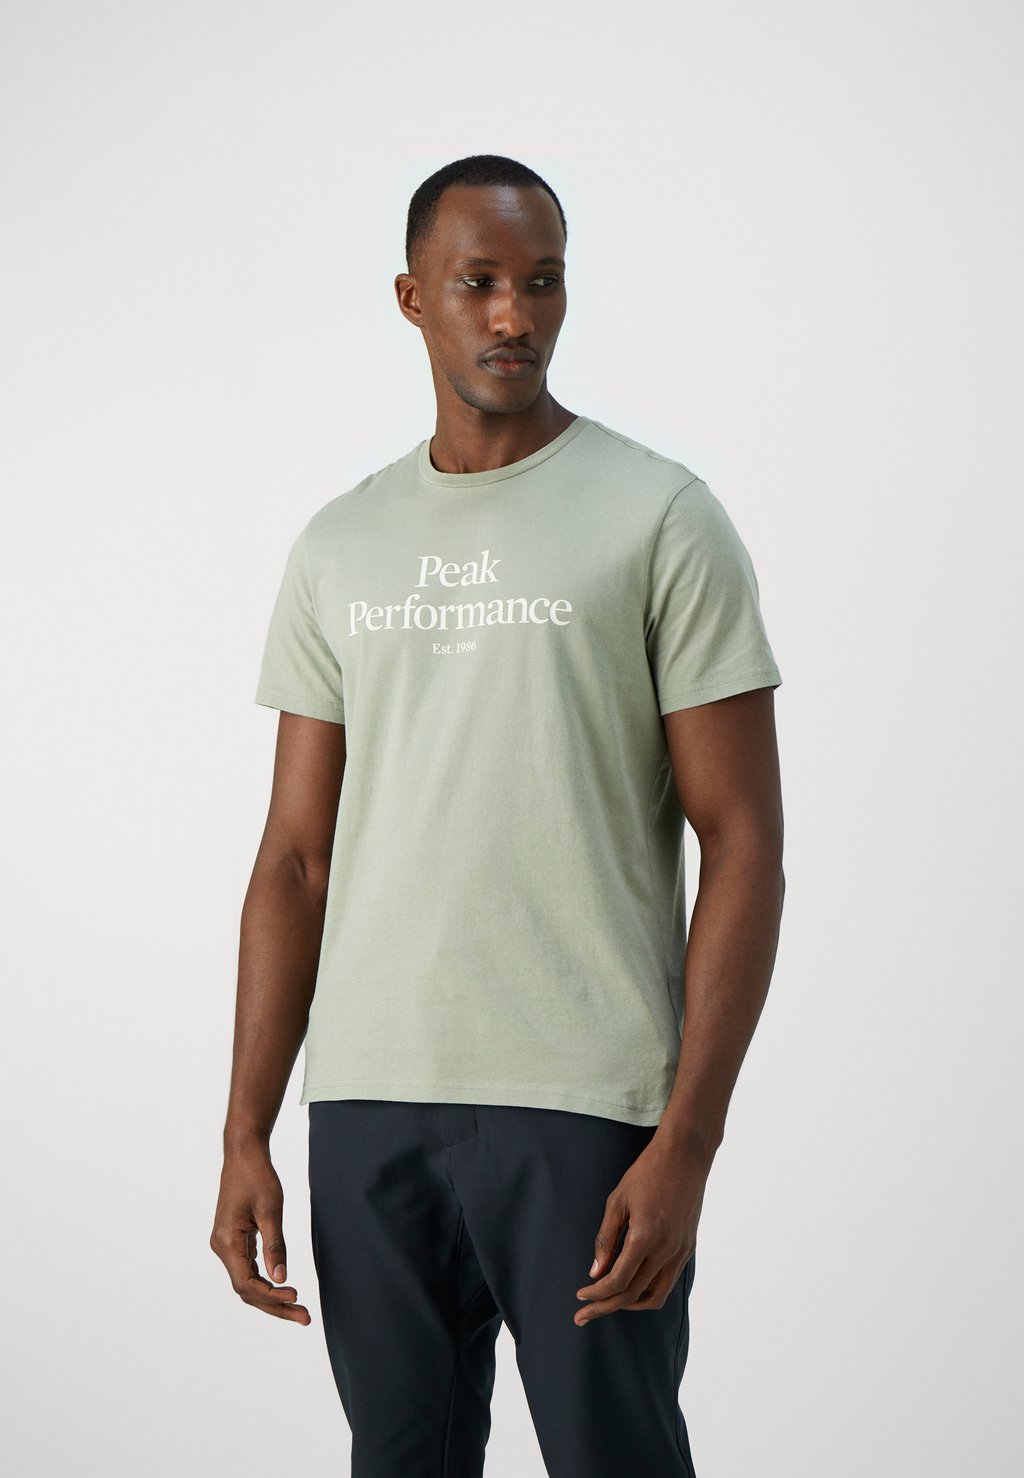 футболка с принтом original tee peak performance цвет med grey melange black Футболка с принтом Original Tee Peak Performance, цвет limit green